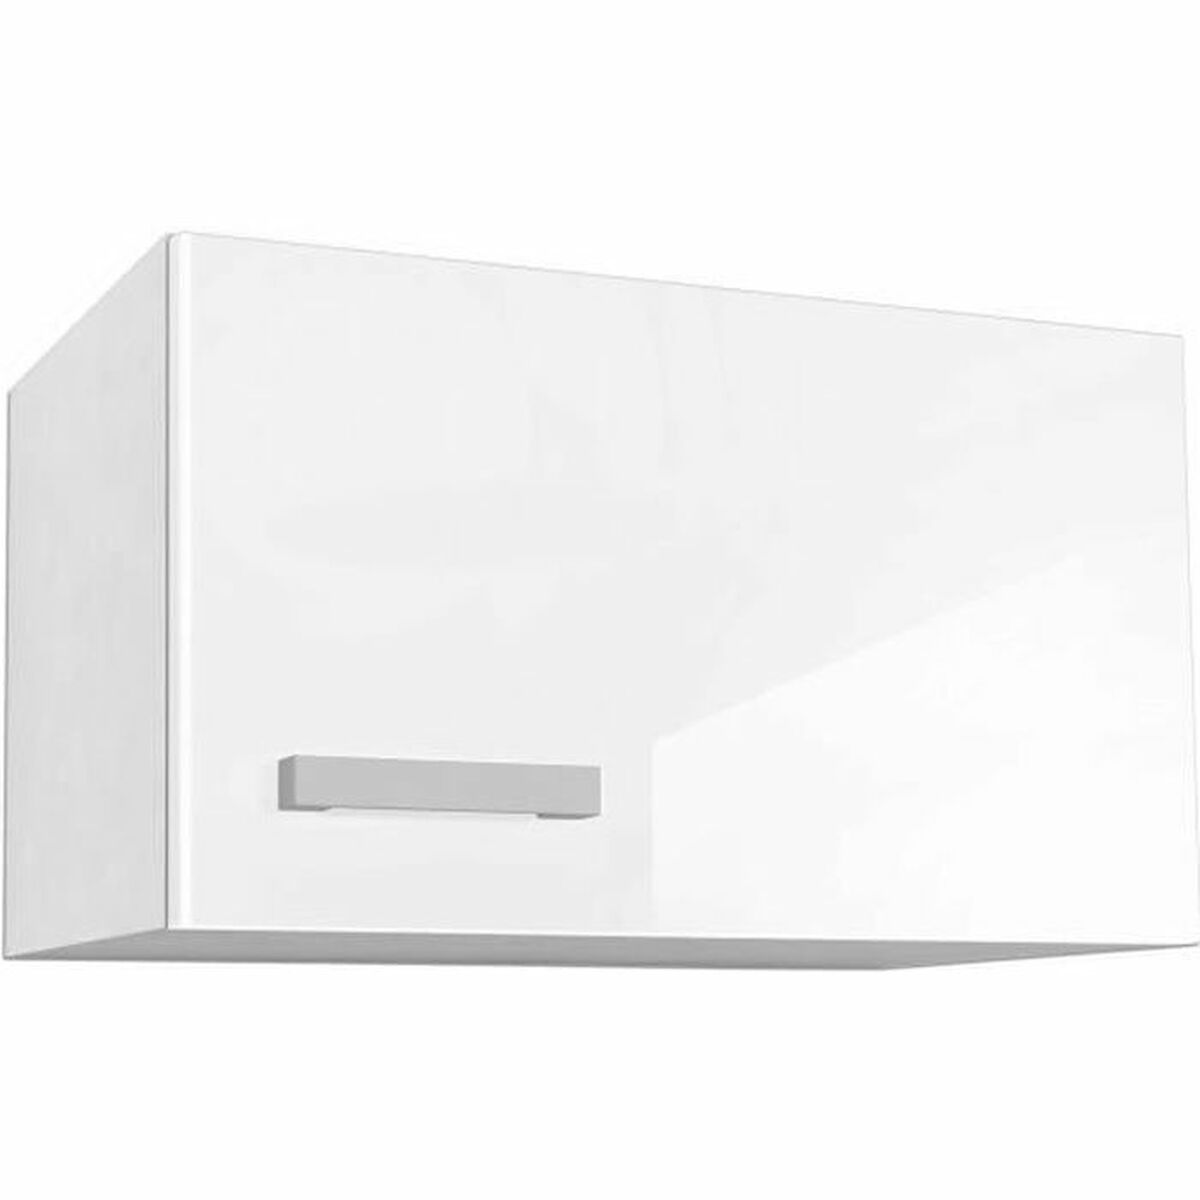 Кухненски шкаф GRAPHIT Бял 50 x 31 x 72 cm